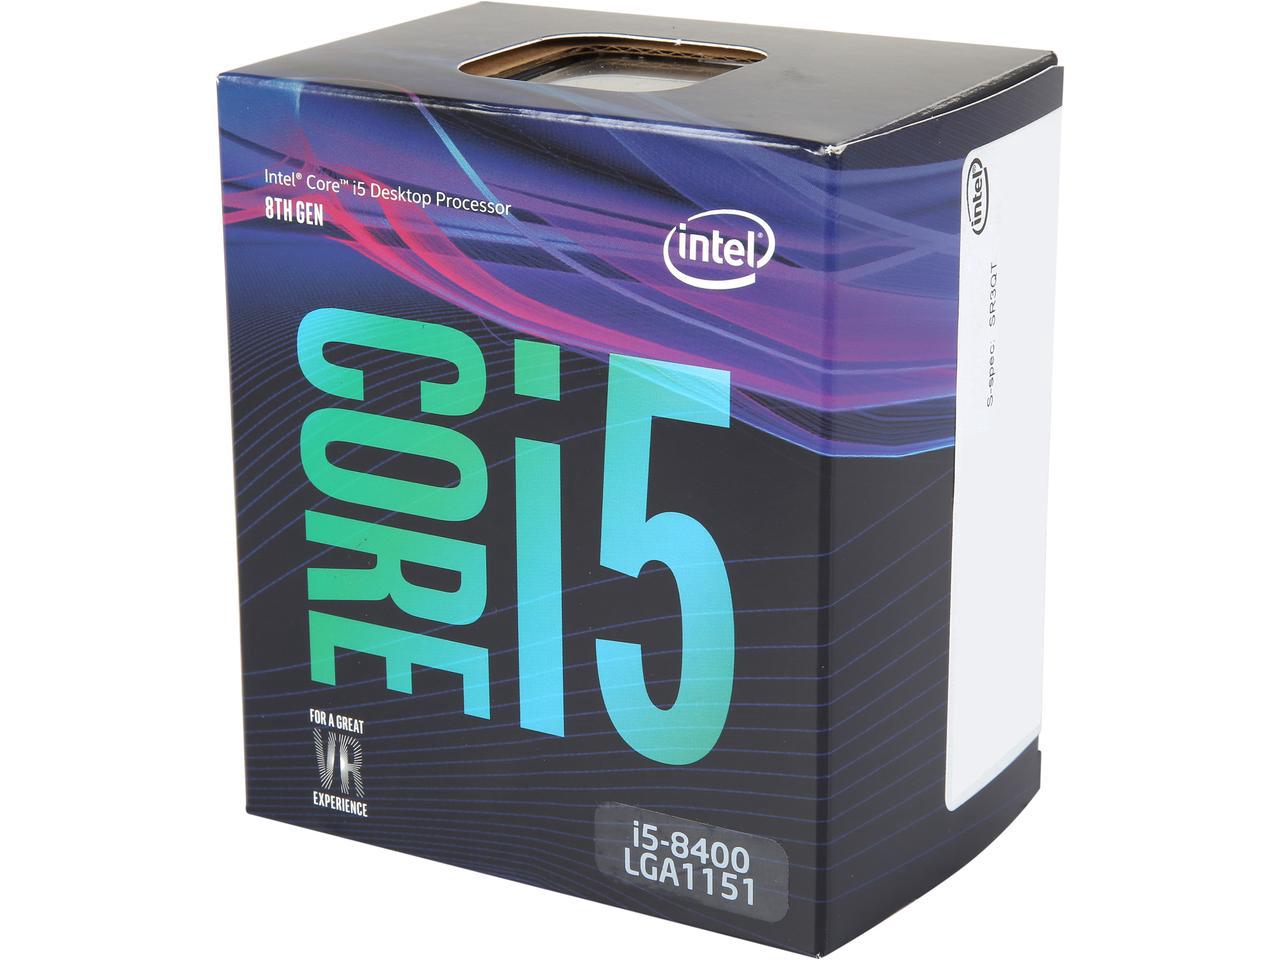 Intel Coffee Lake CPU GPU Core i3,i5,i7 8100,8400,8600,8700 K